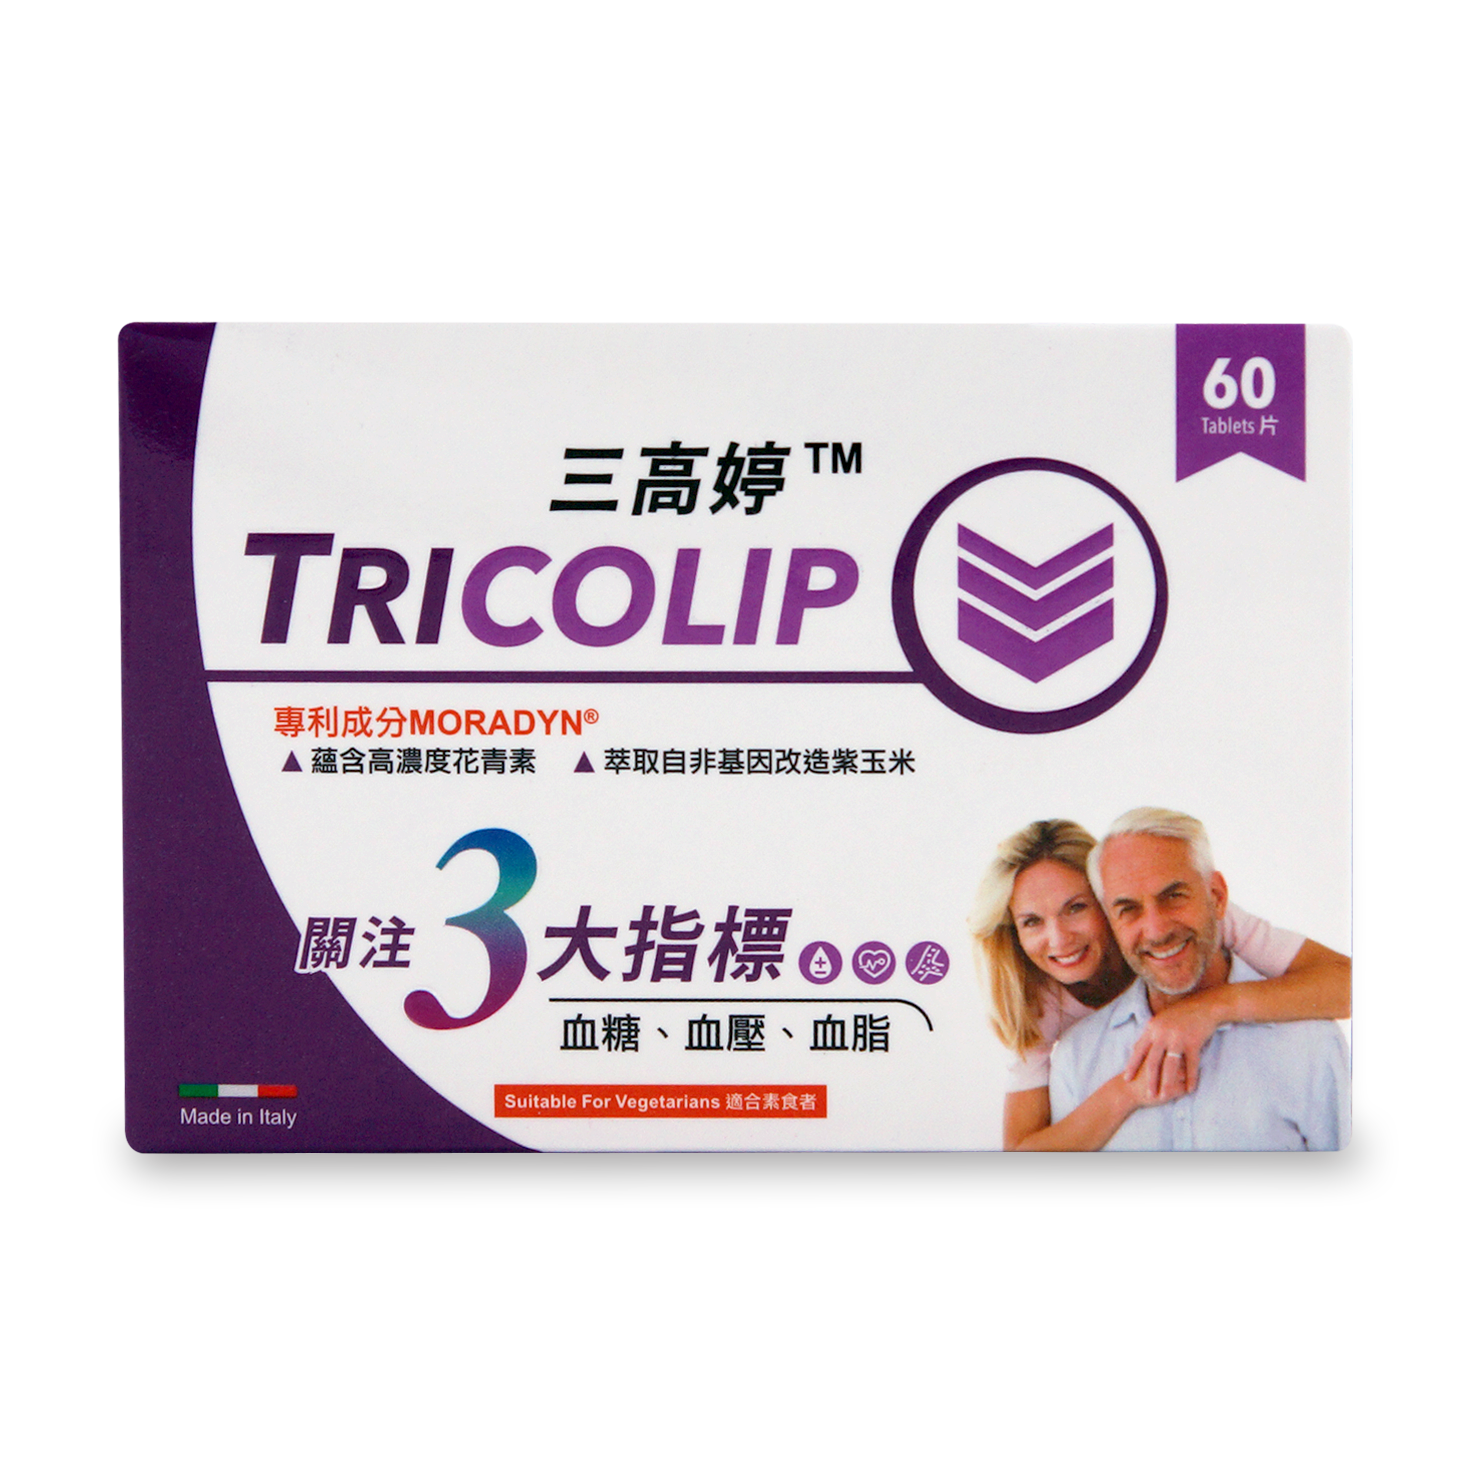 三高婷 60's TRICOLIP 60 tablets